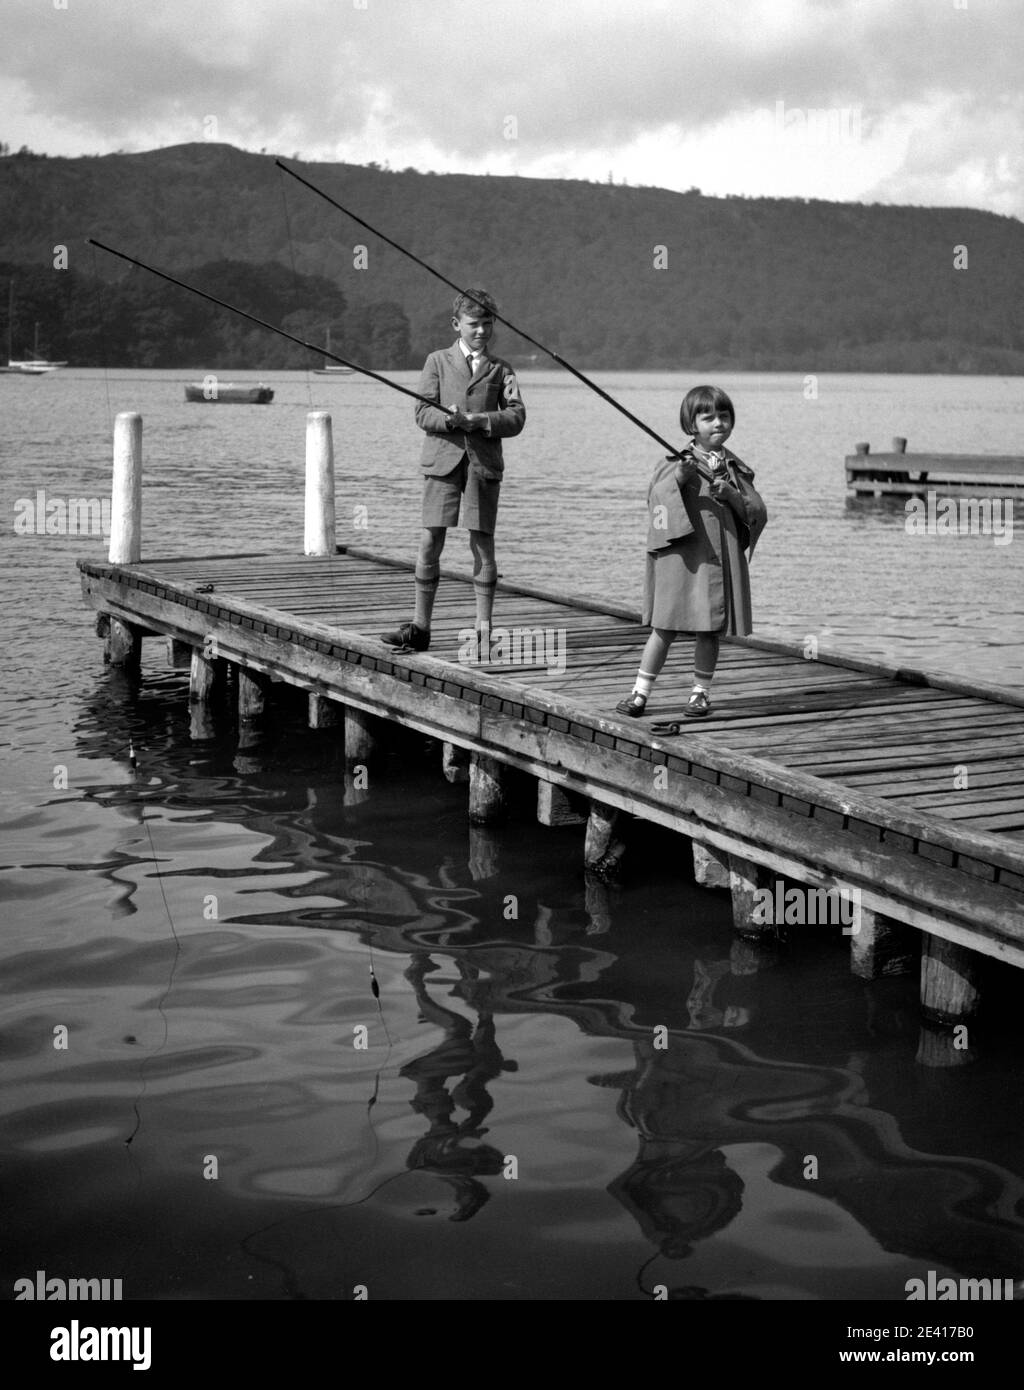 Un ragazzo e una ragazza, forse fratello e sorella, pescano in un lago al largo di una passerella, negli anni '40 o '50 Foto Stock